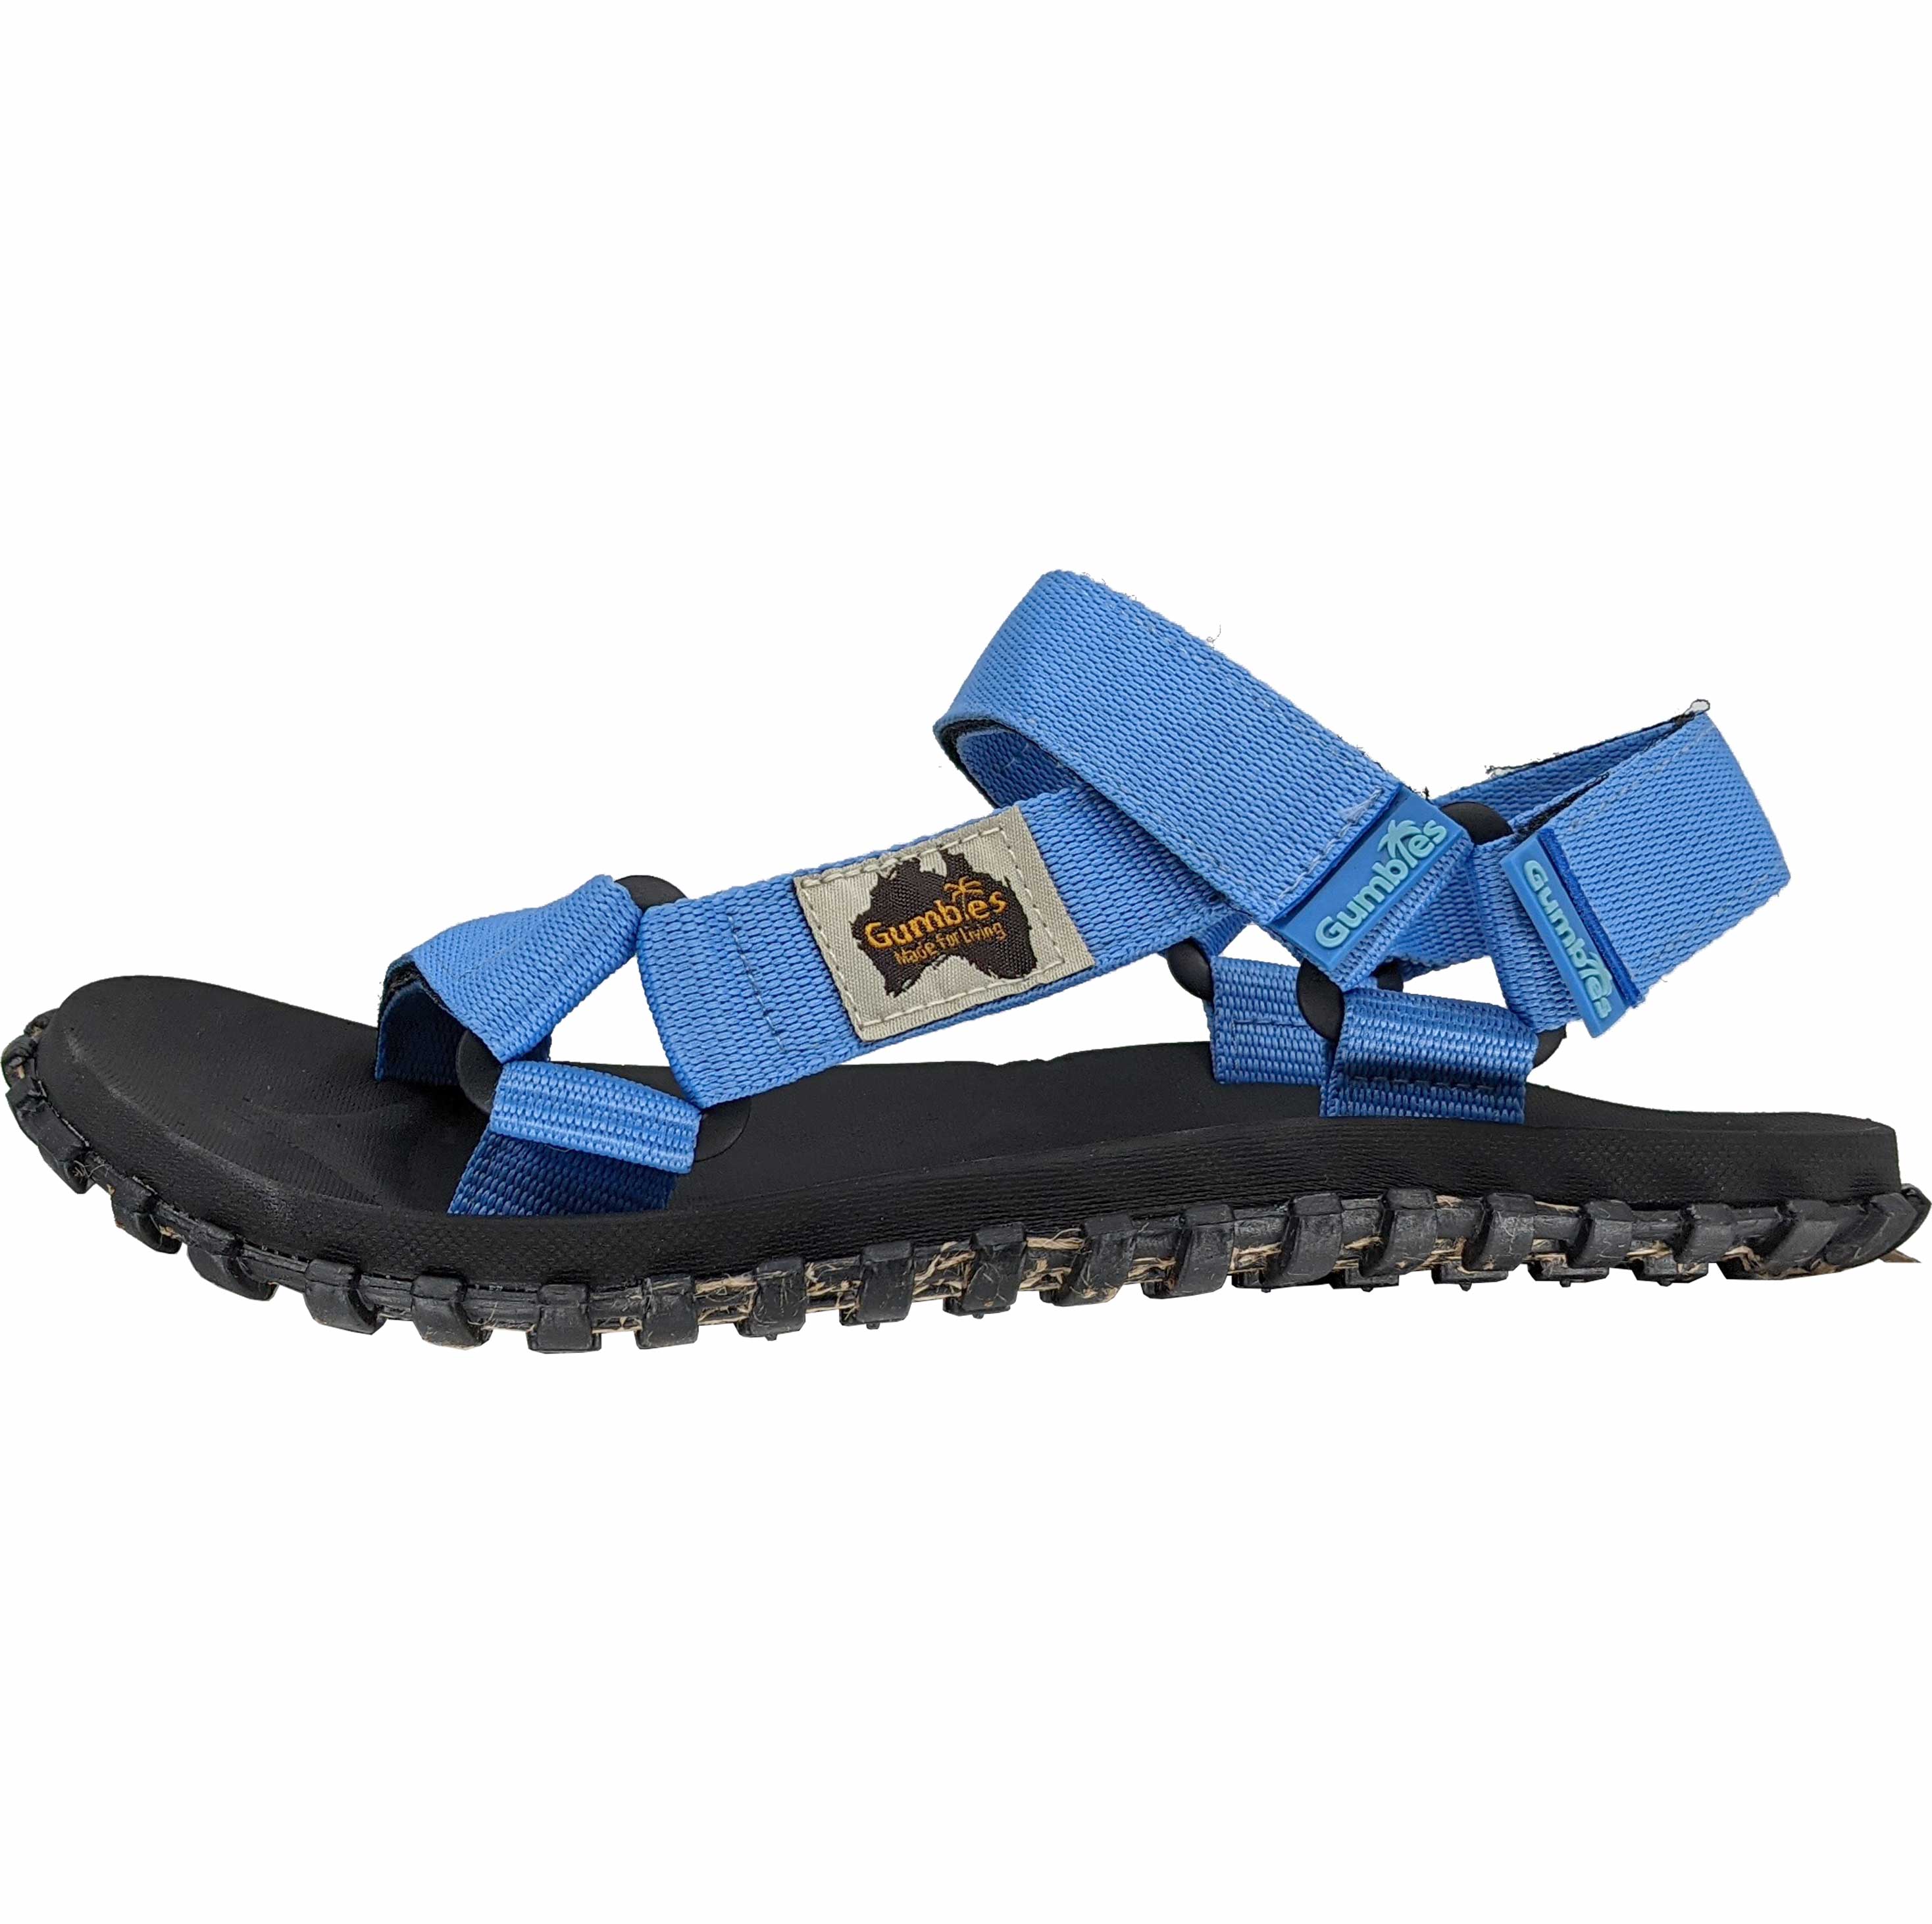 Scrambler Sandals - Men's - Light Blue